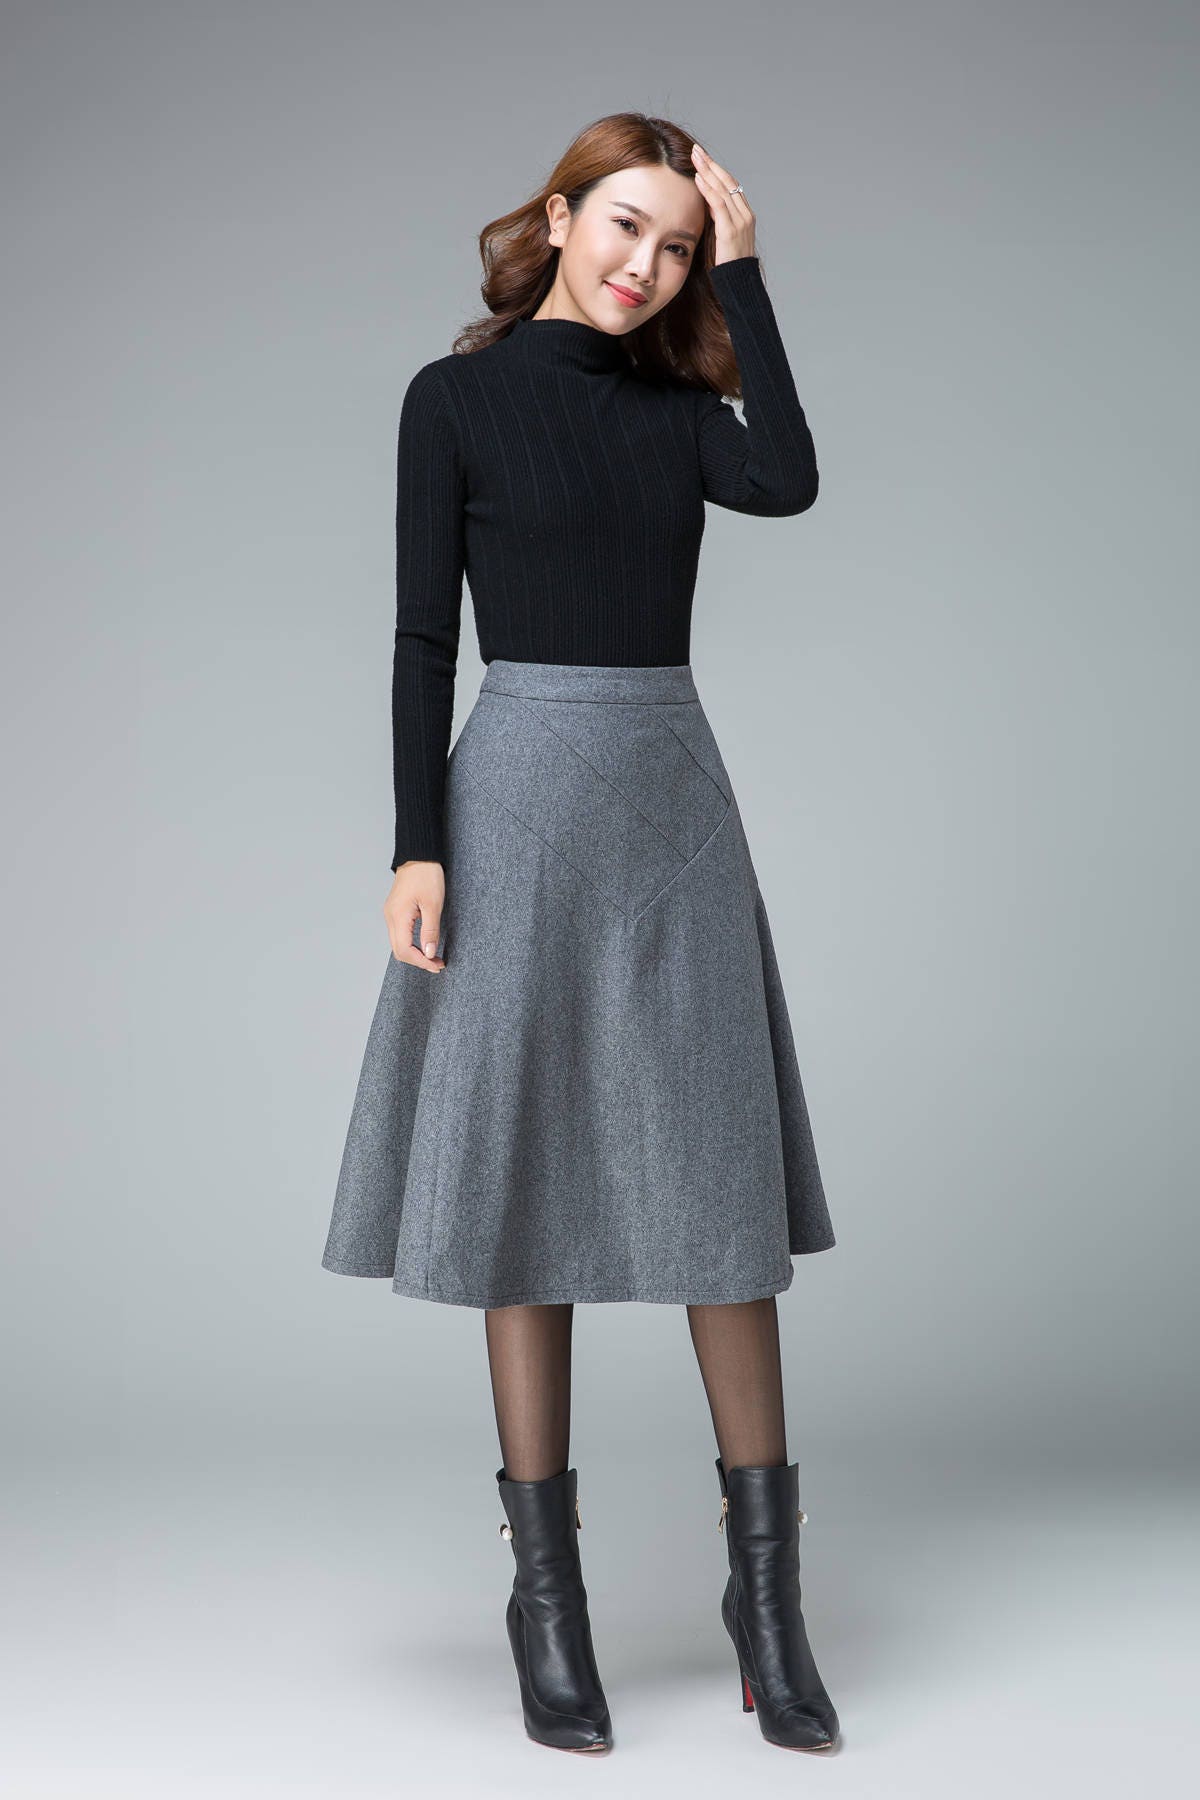 Grey wool skirt short skirt fitted skirt pleated skirt | Etsy